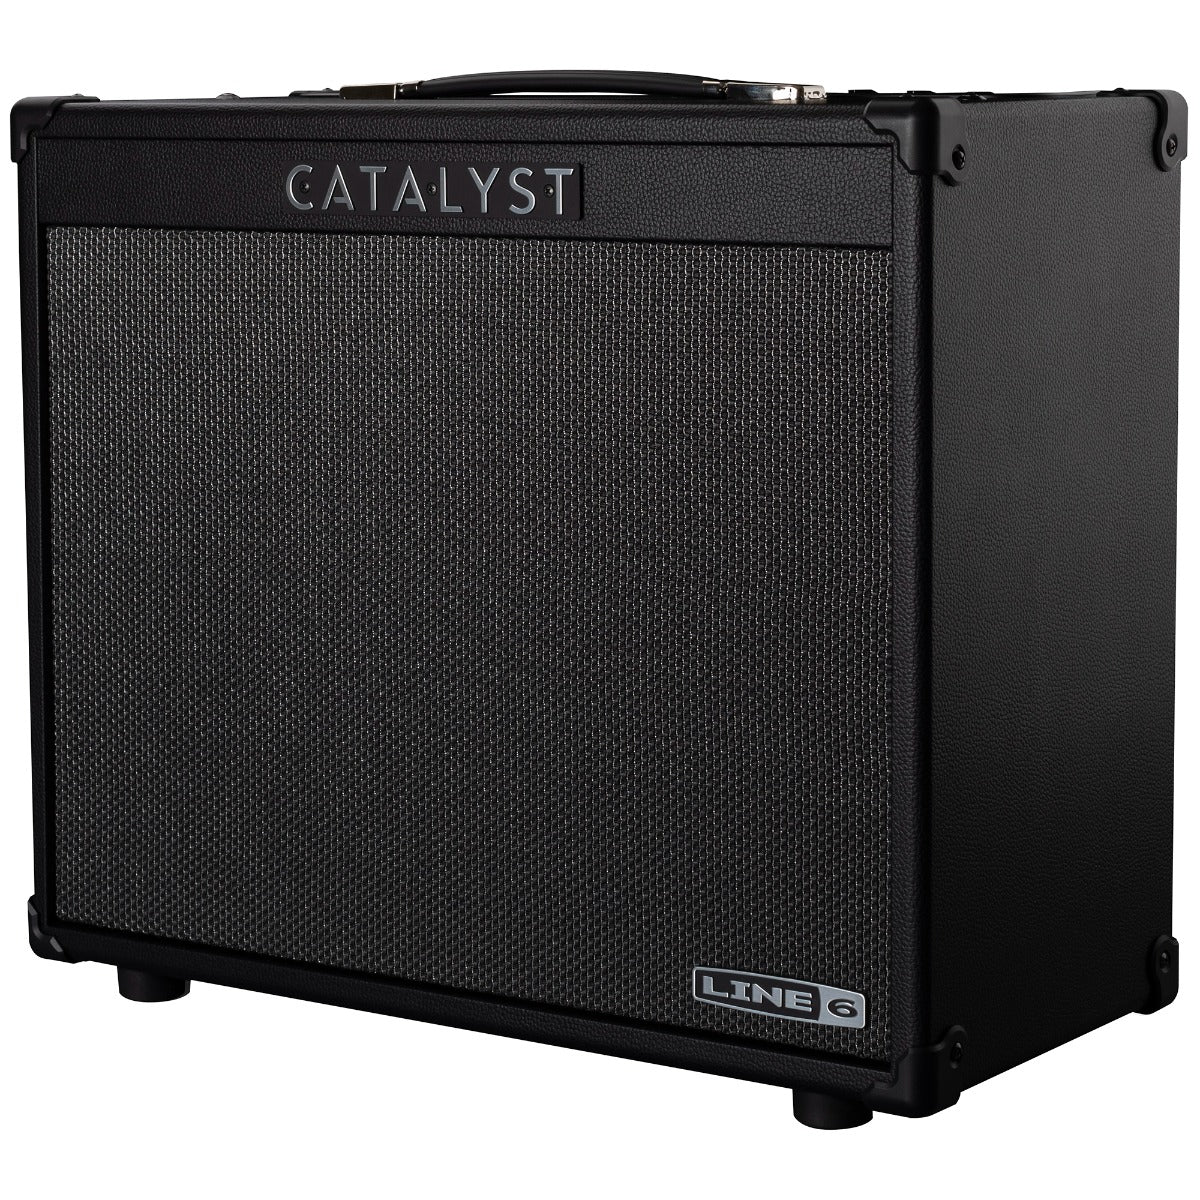 Line 6 Catalyst 100 1x12 Combo Guitar Amplifier, View 2